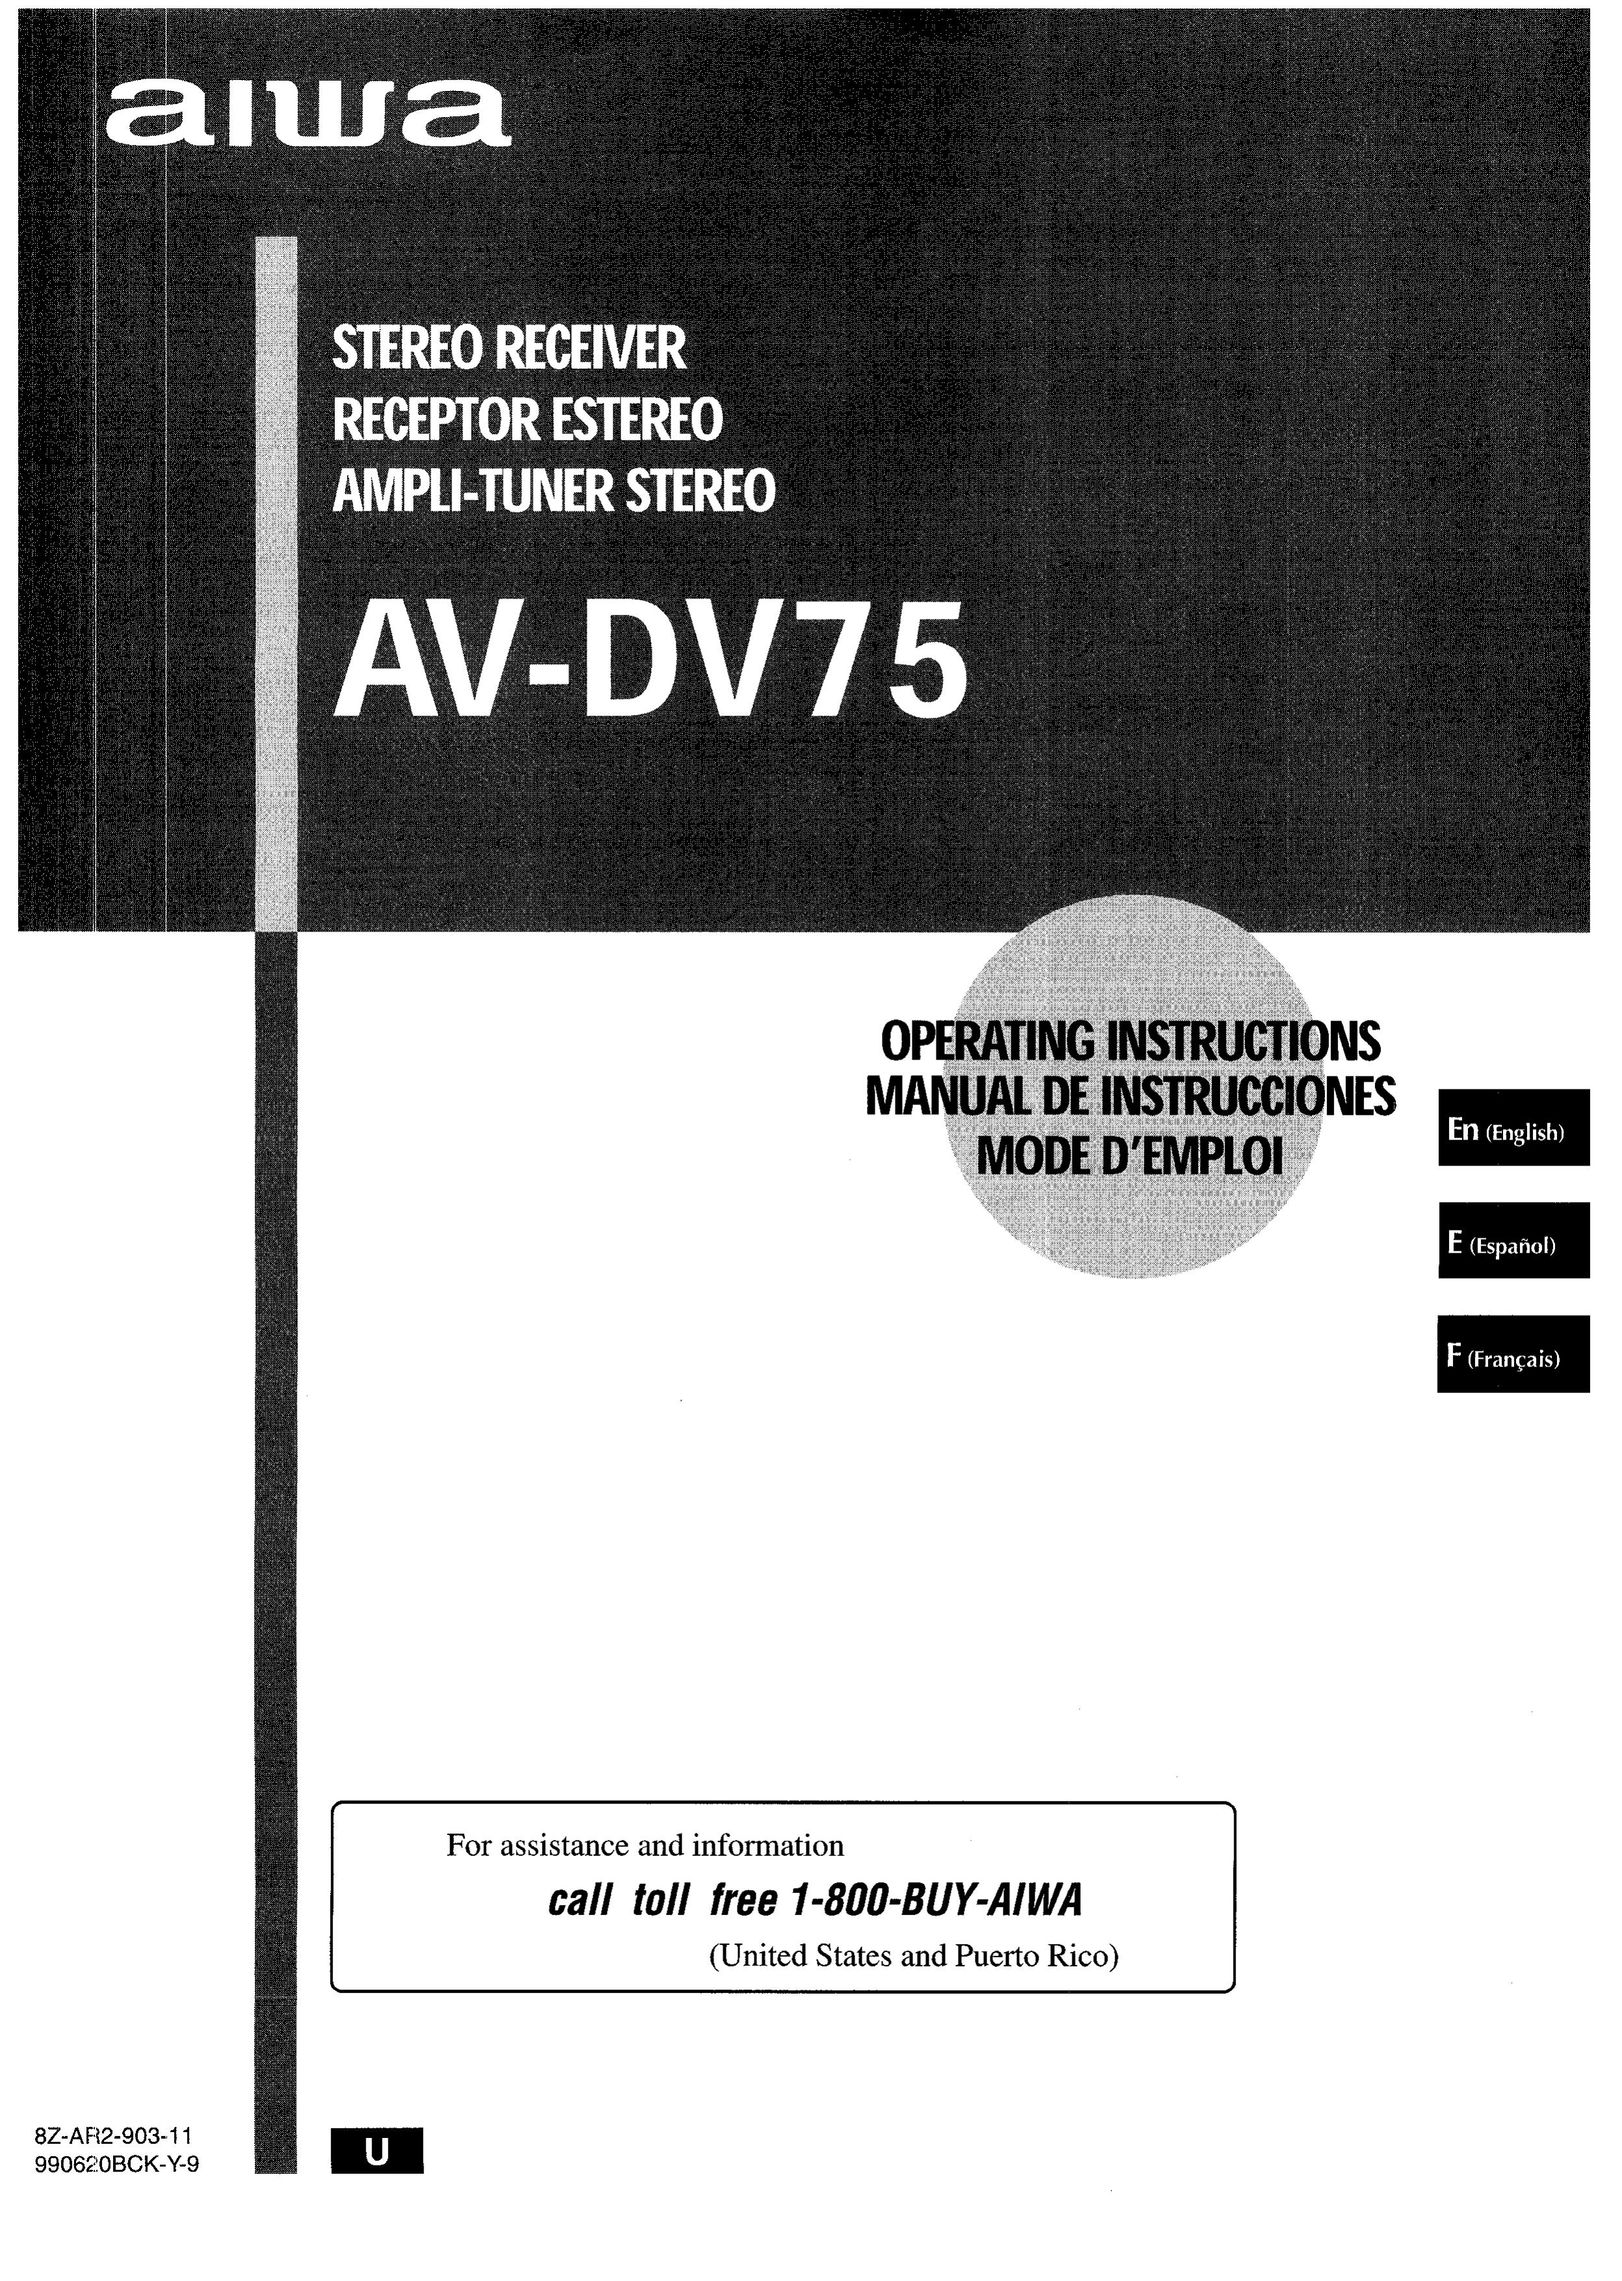 Sony AV-DV75 Stereo Receiver User Manual